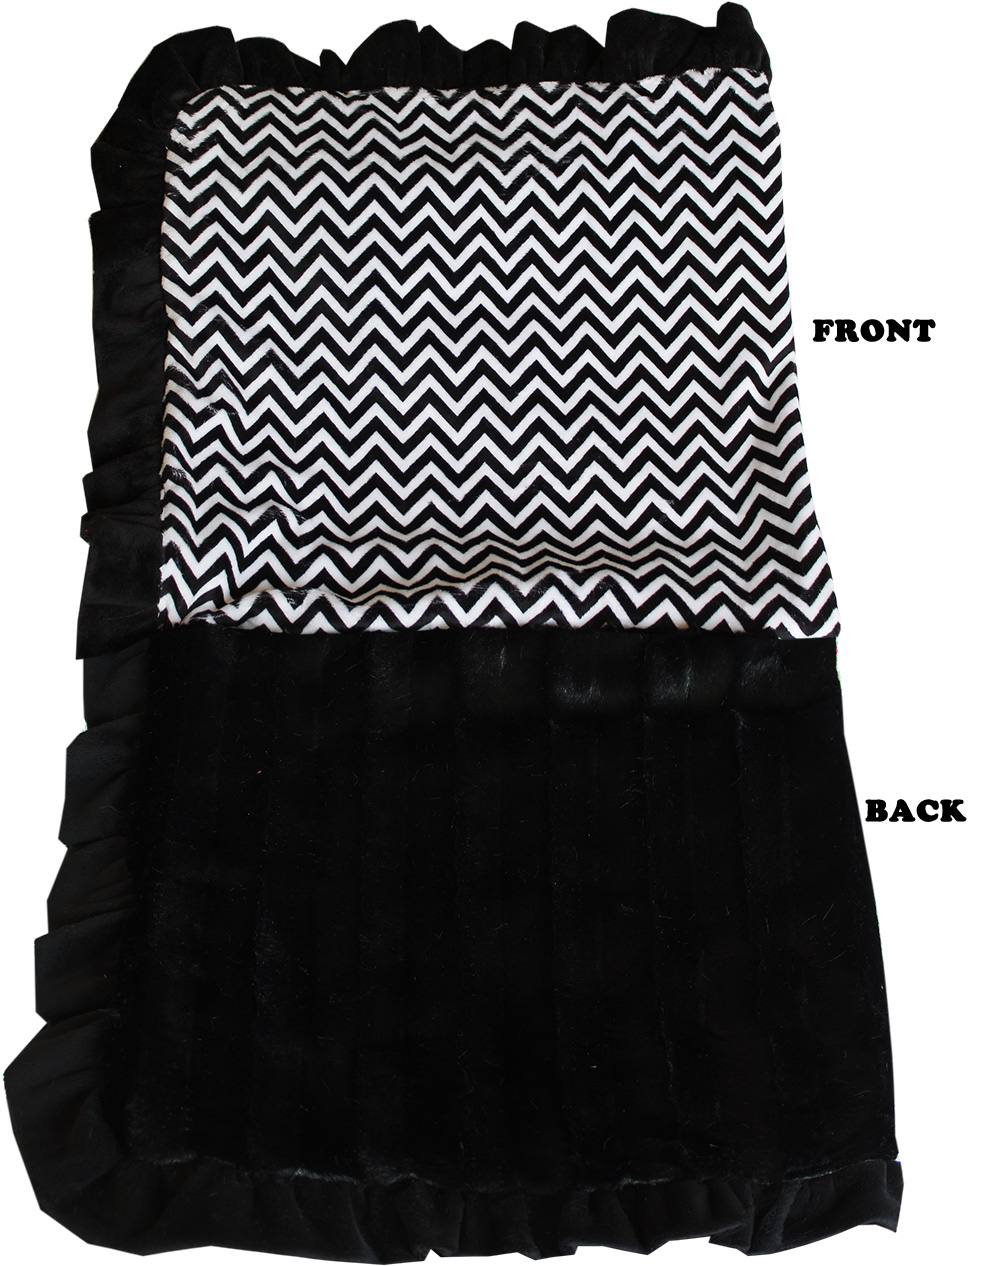 Luxurious Plush Pet Blanket Black Chevron 1/2 Size